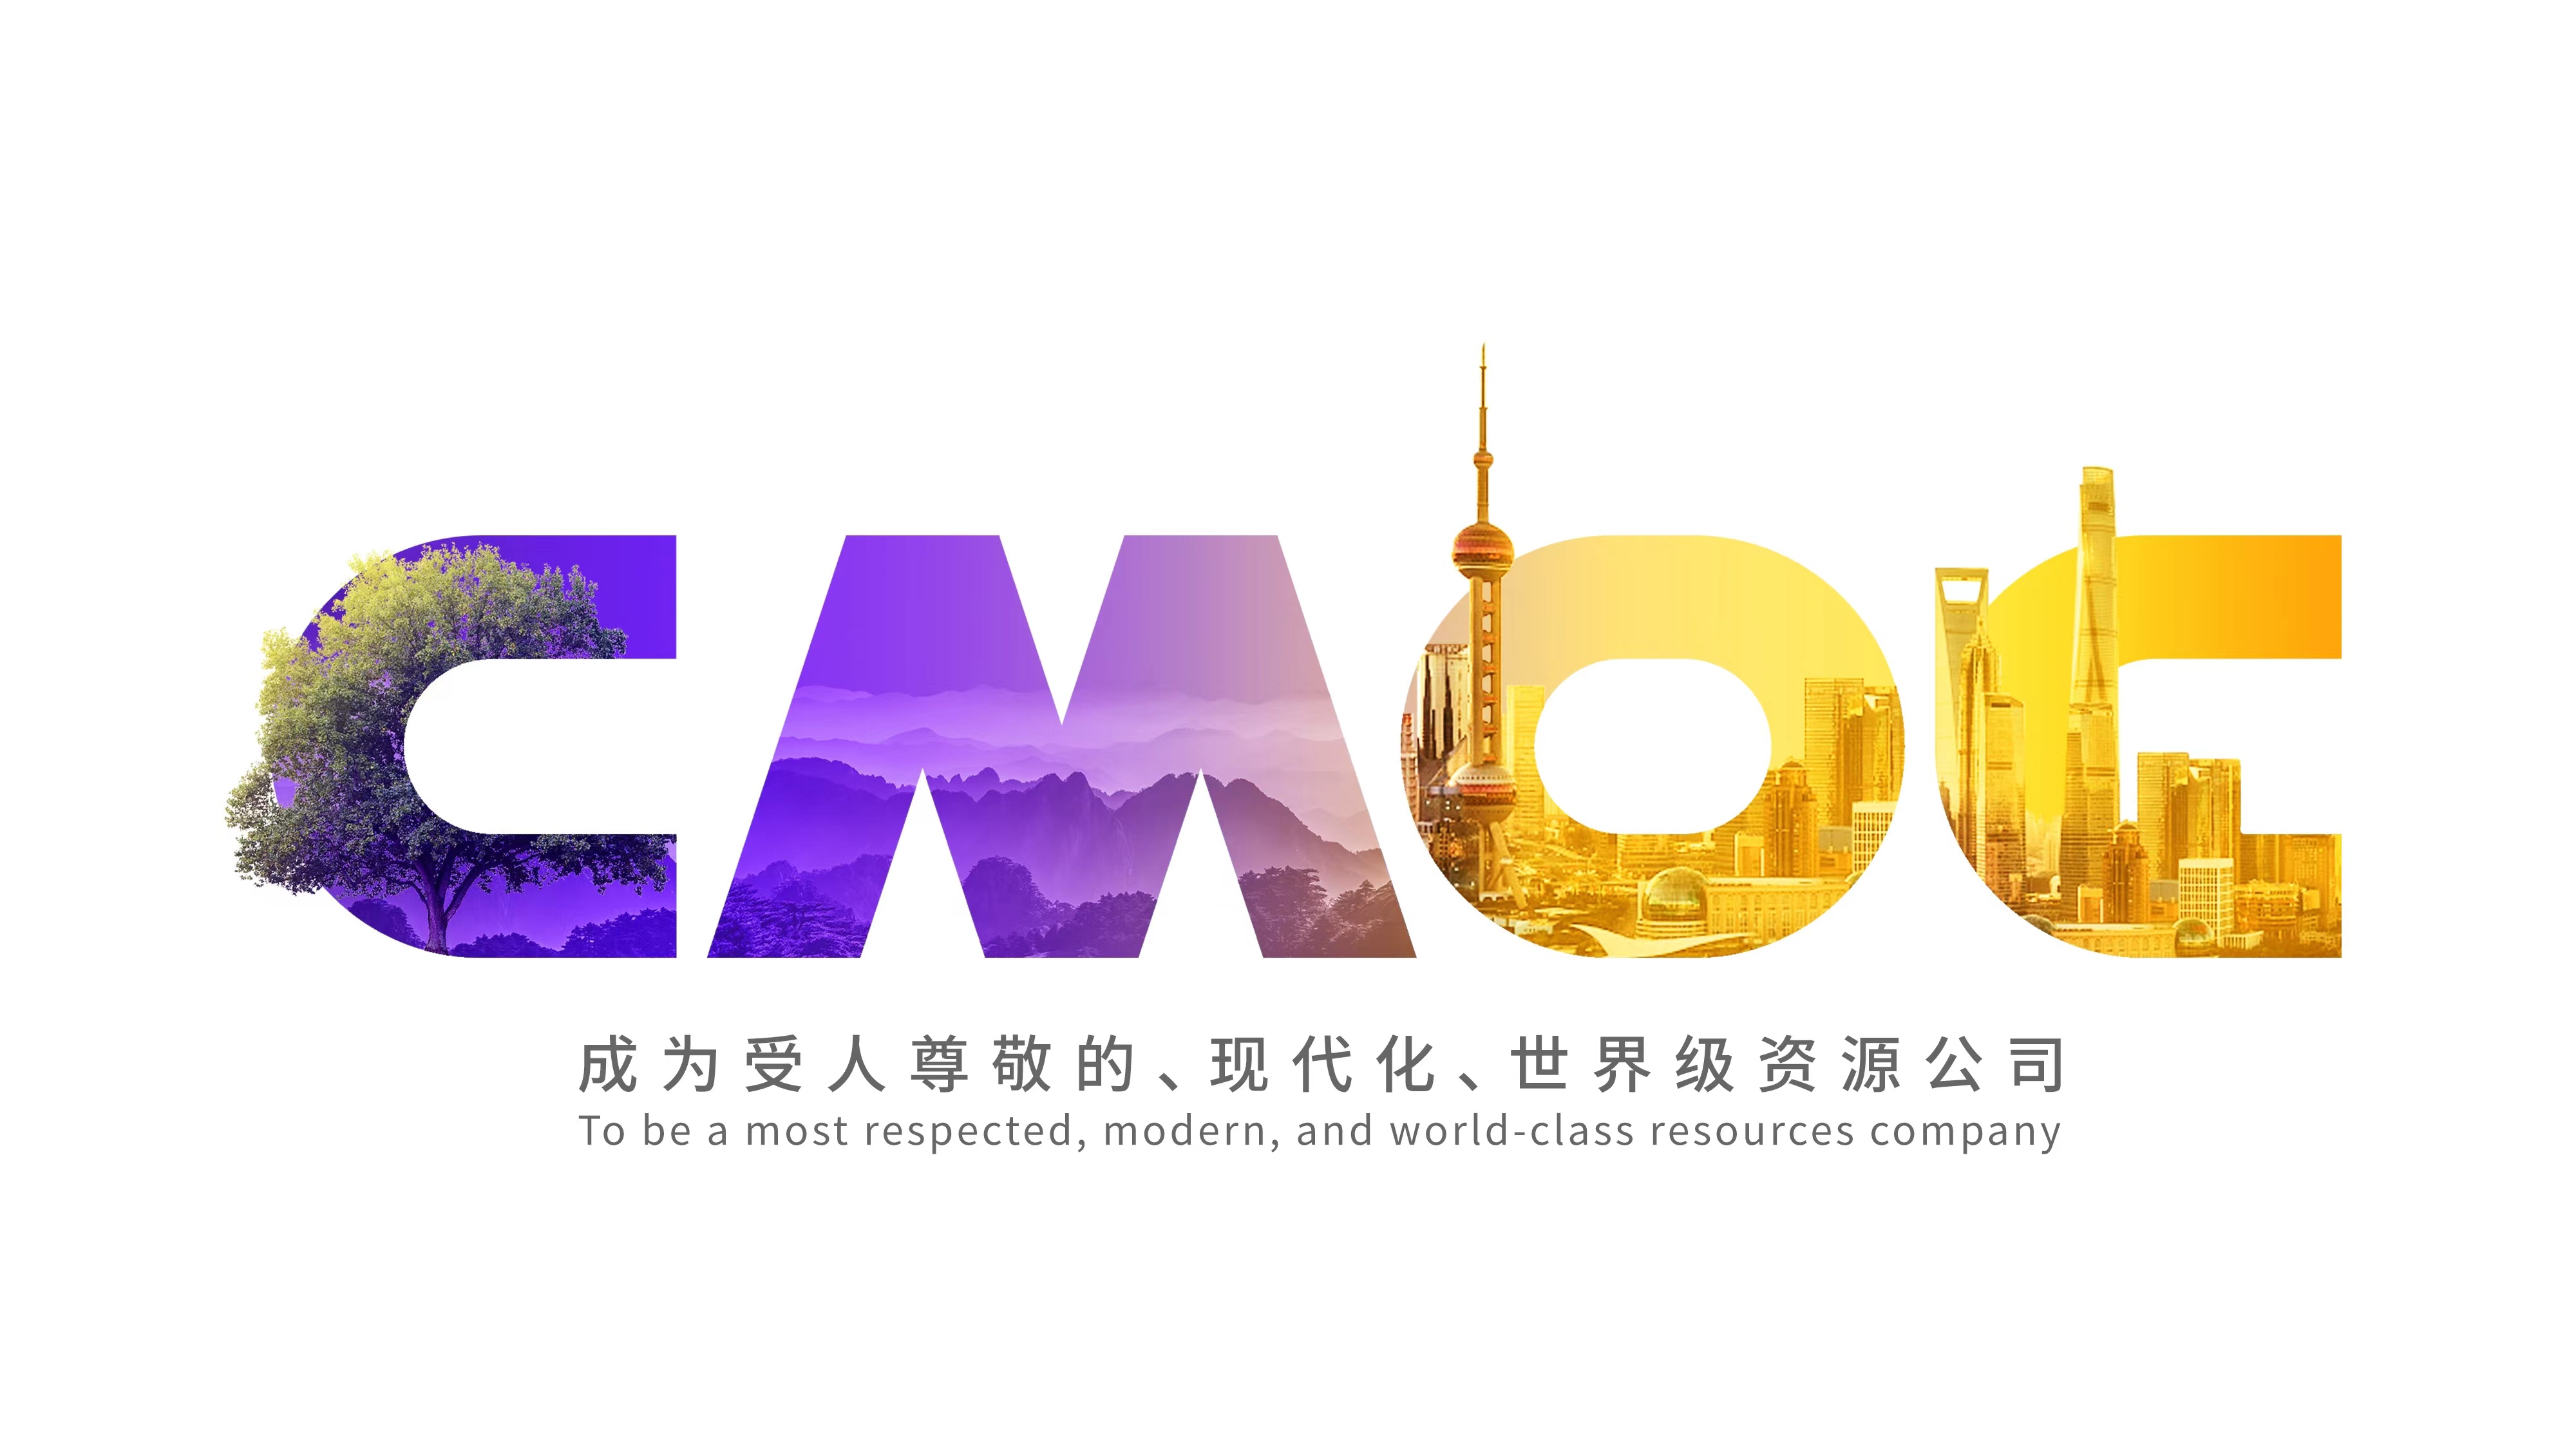 洛阳钼业英文名正式更新为CMOC Group Limited